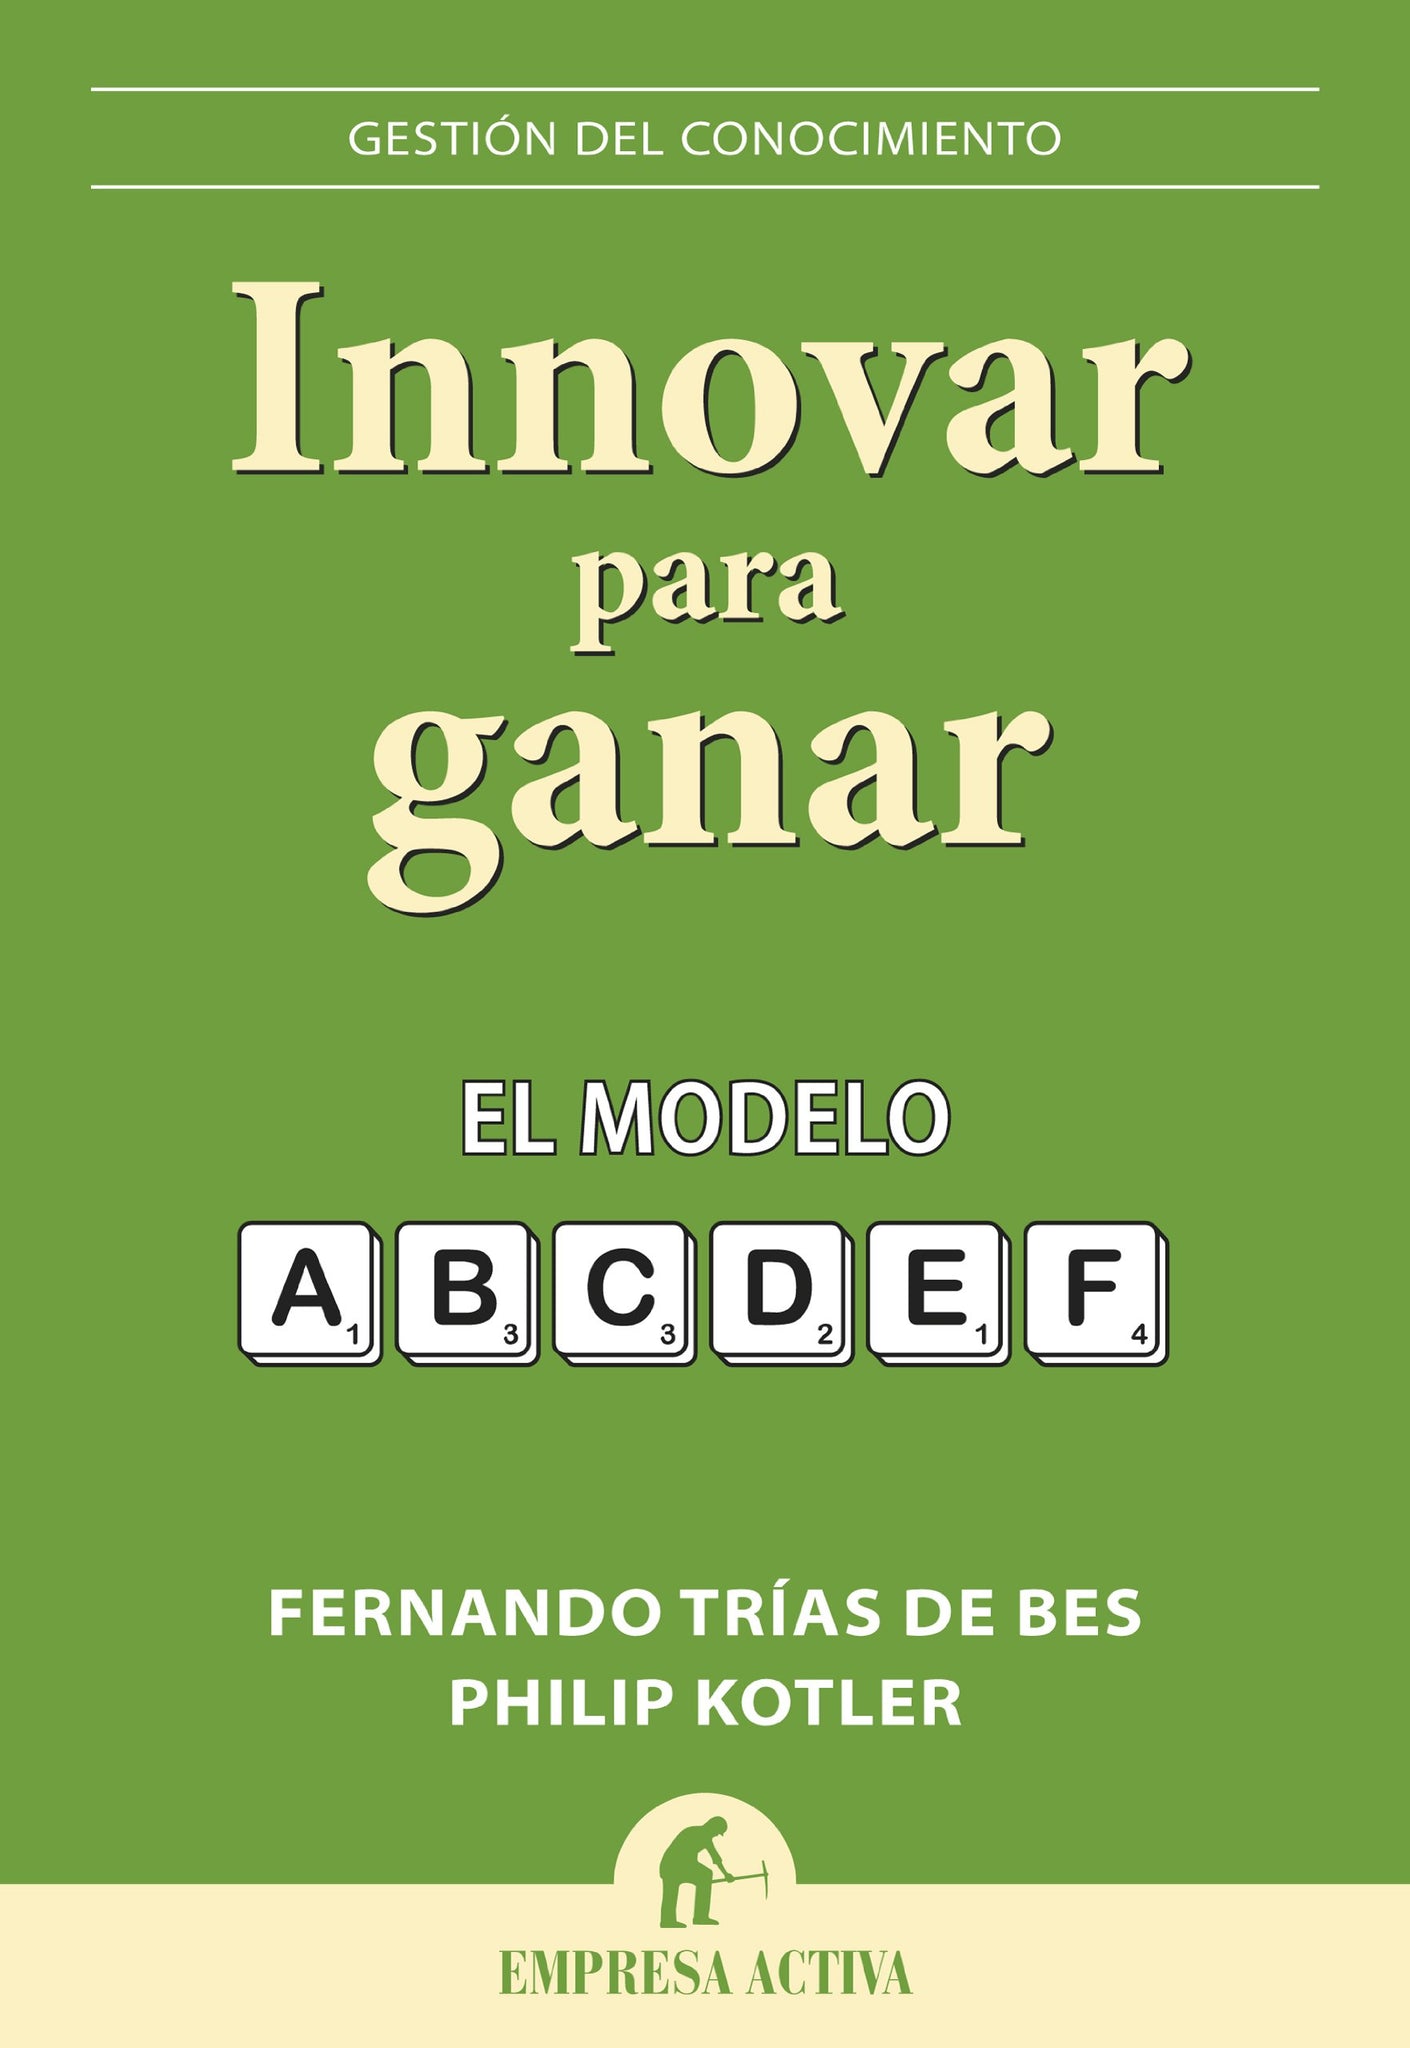 Innovar para ganar: El modelo ABCDEF